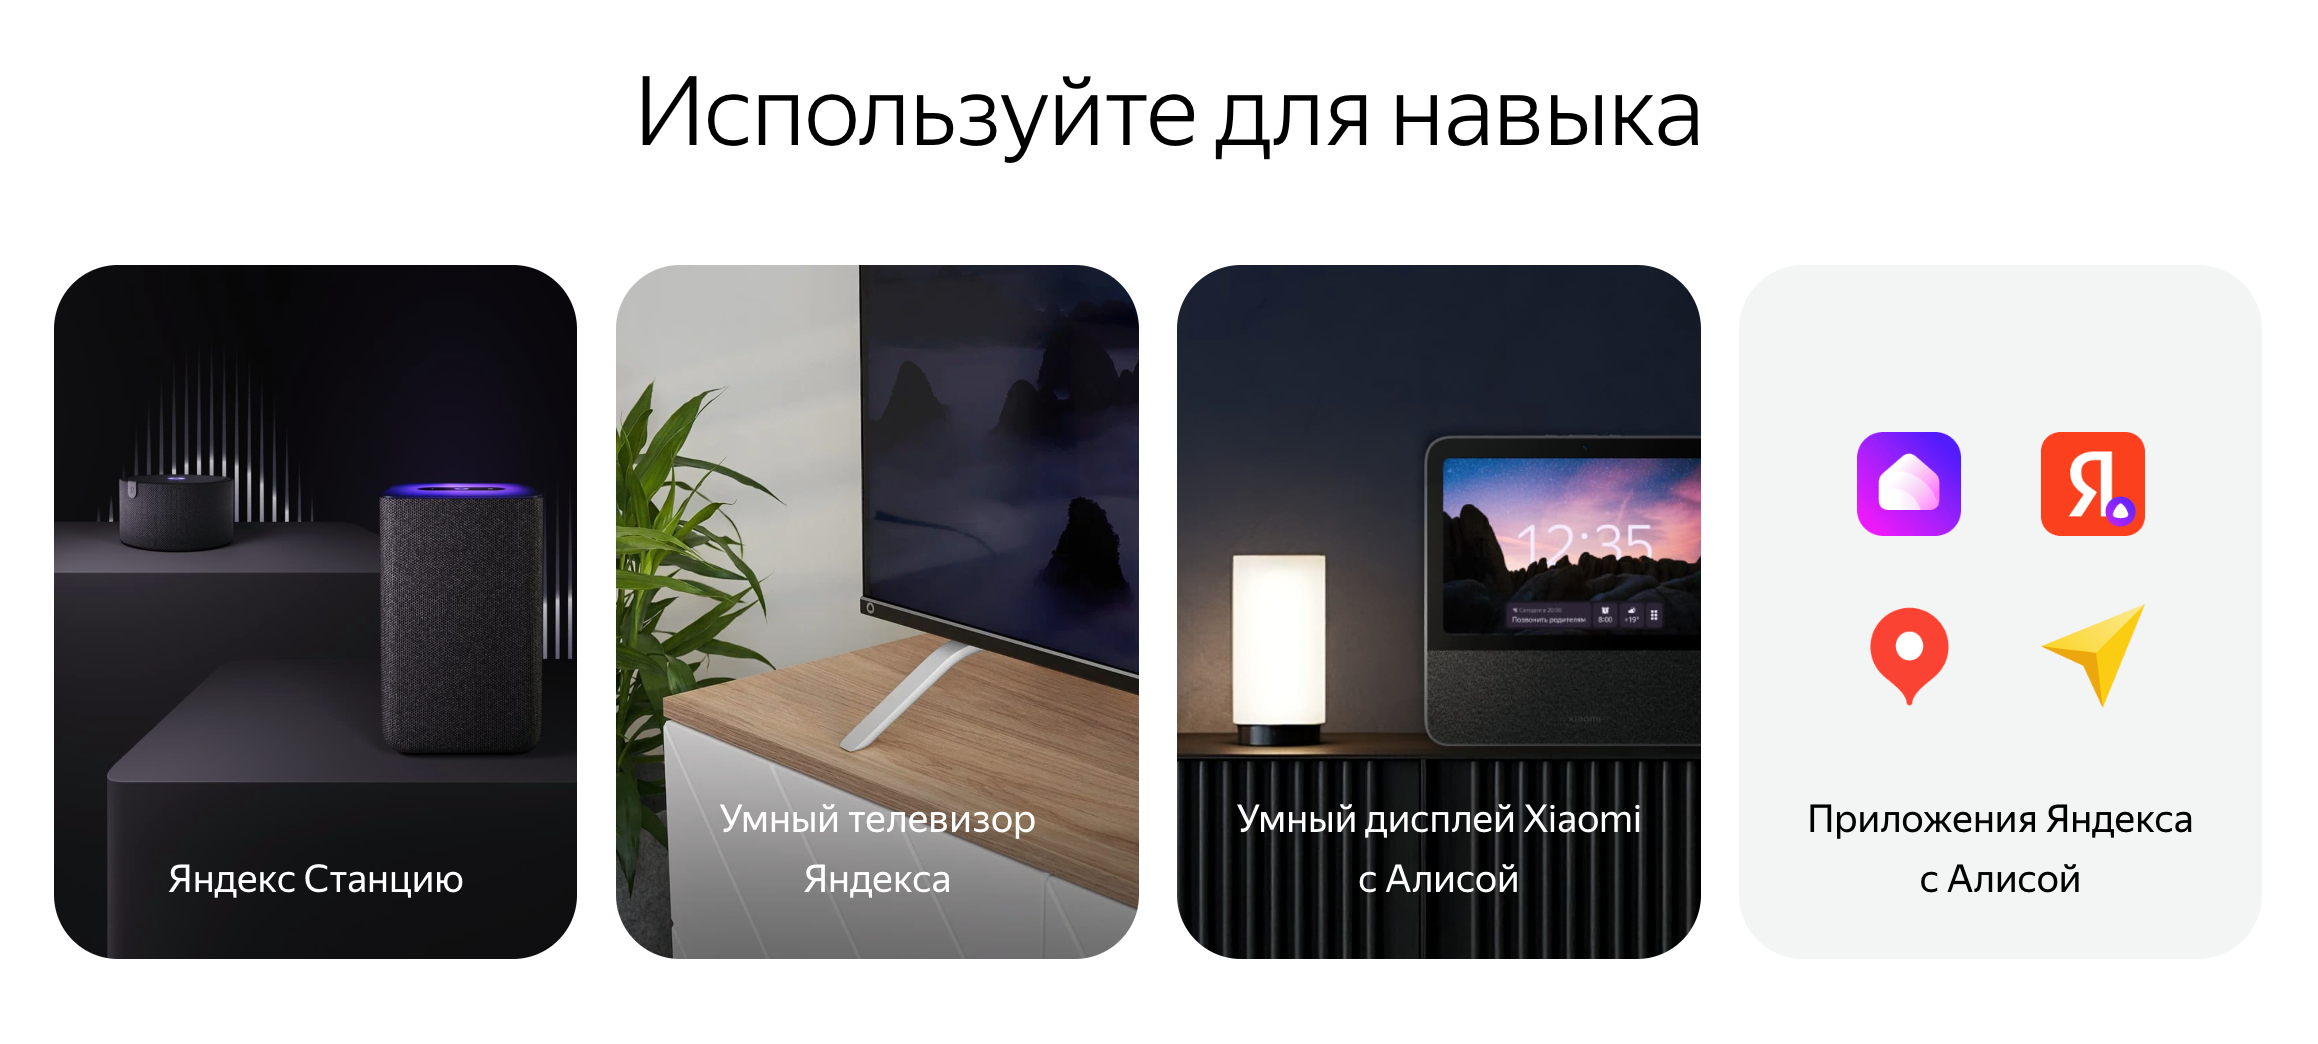 Воспользоваться функцией можно даже в телевизоре. Правда, только если он от «Яндекса». Источник: yandex.ru